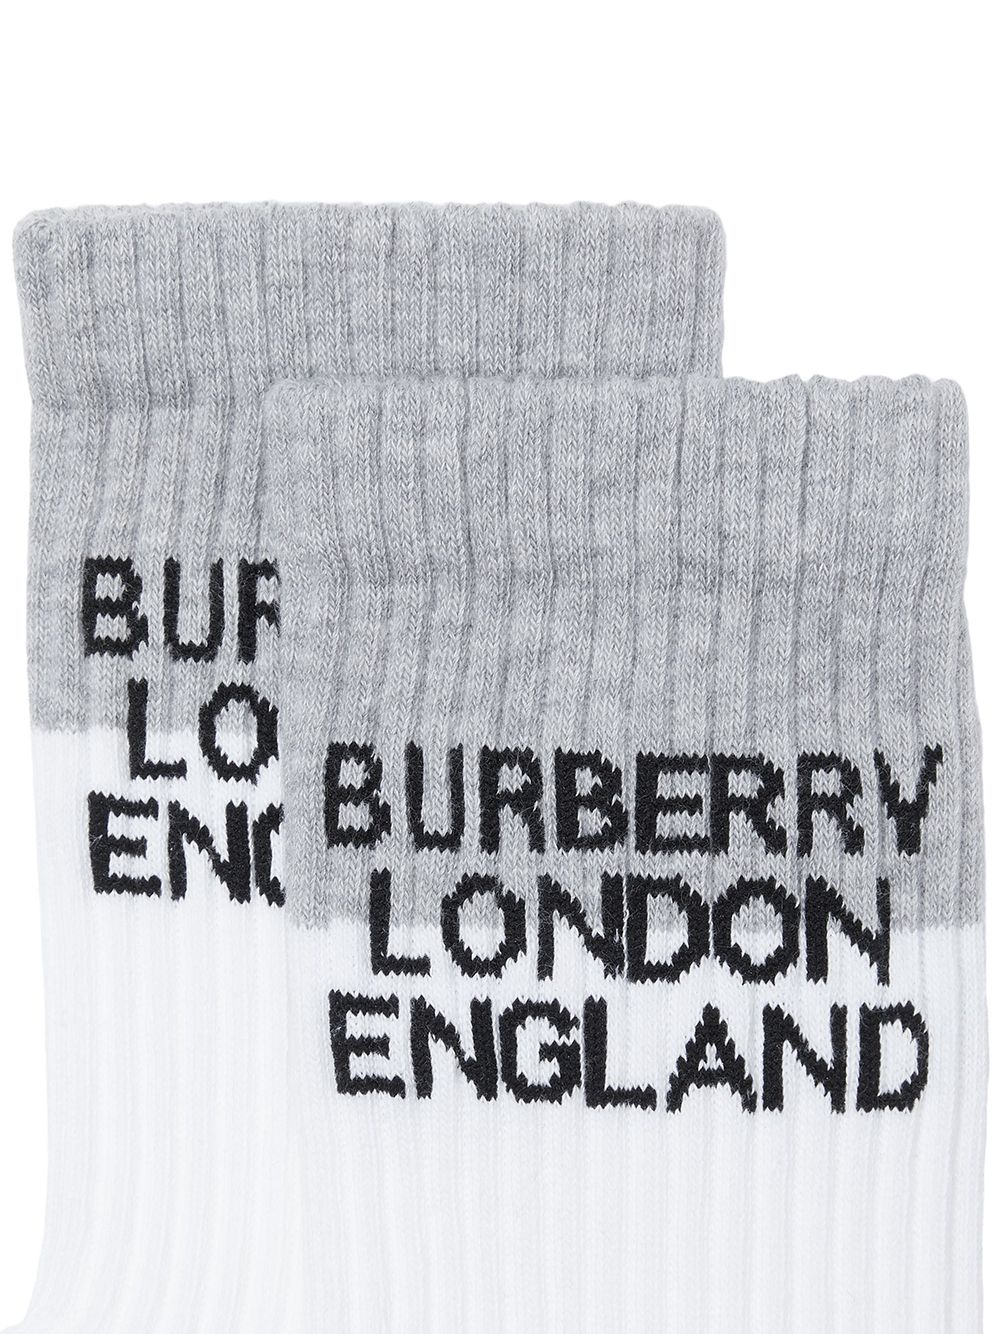 фото Burberry носки вязки интарсия с логотипом